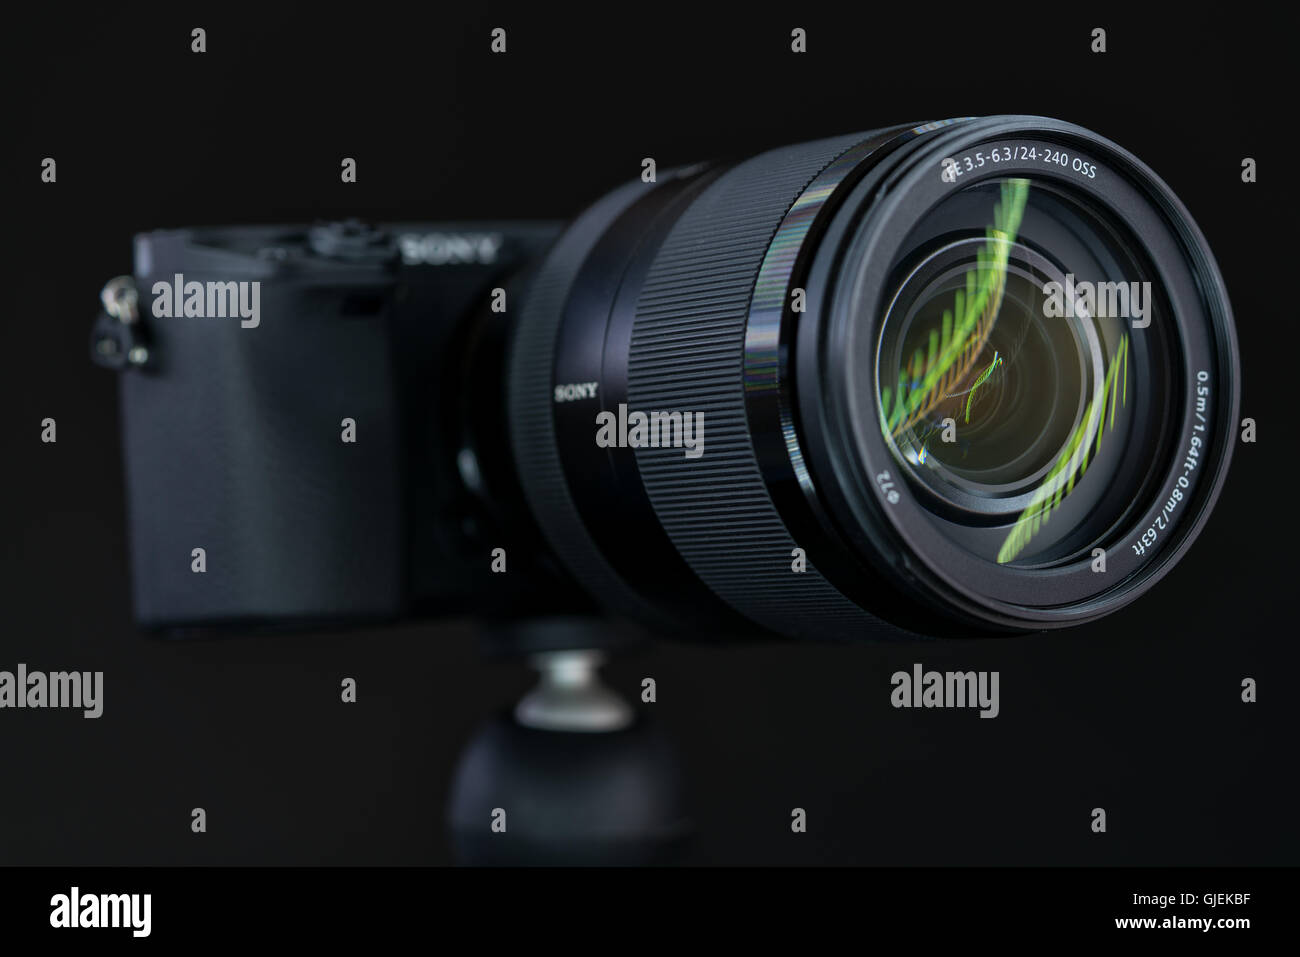 BERLIN, Deutschland - 6. Juni 2016: Sony Alpha a6300 spiegellose schnelle Fokussierung und 4 K-shooting Digitalkamera mit Sony 24-240 mm Tra Stockfoto